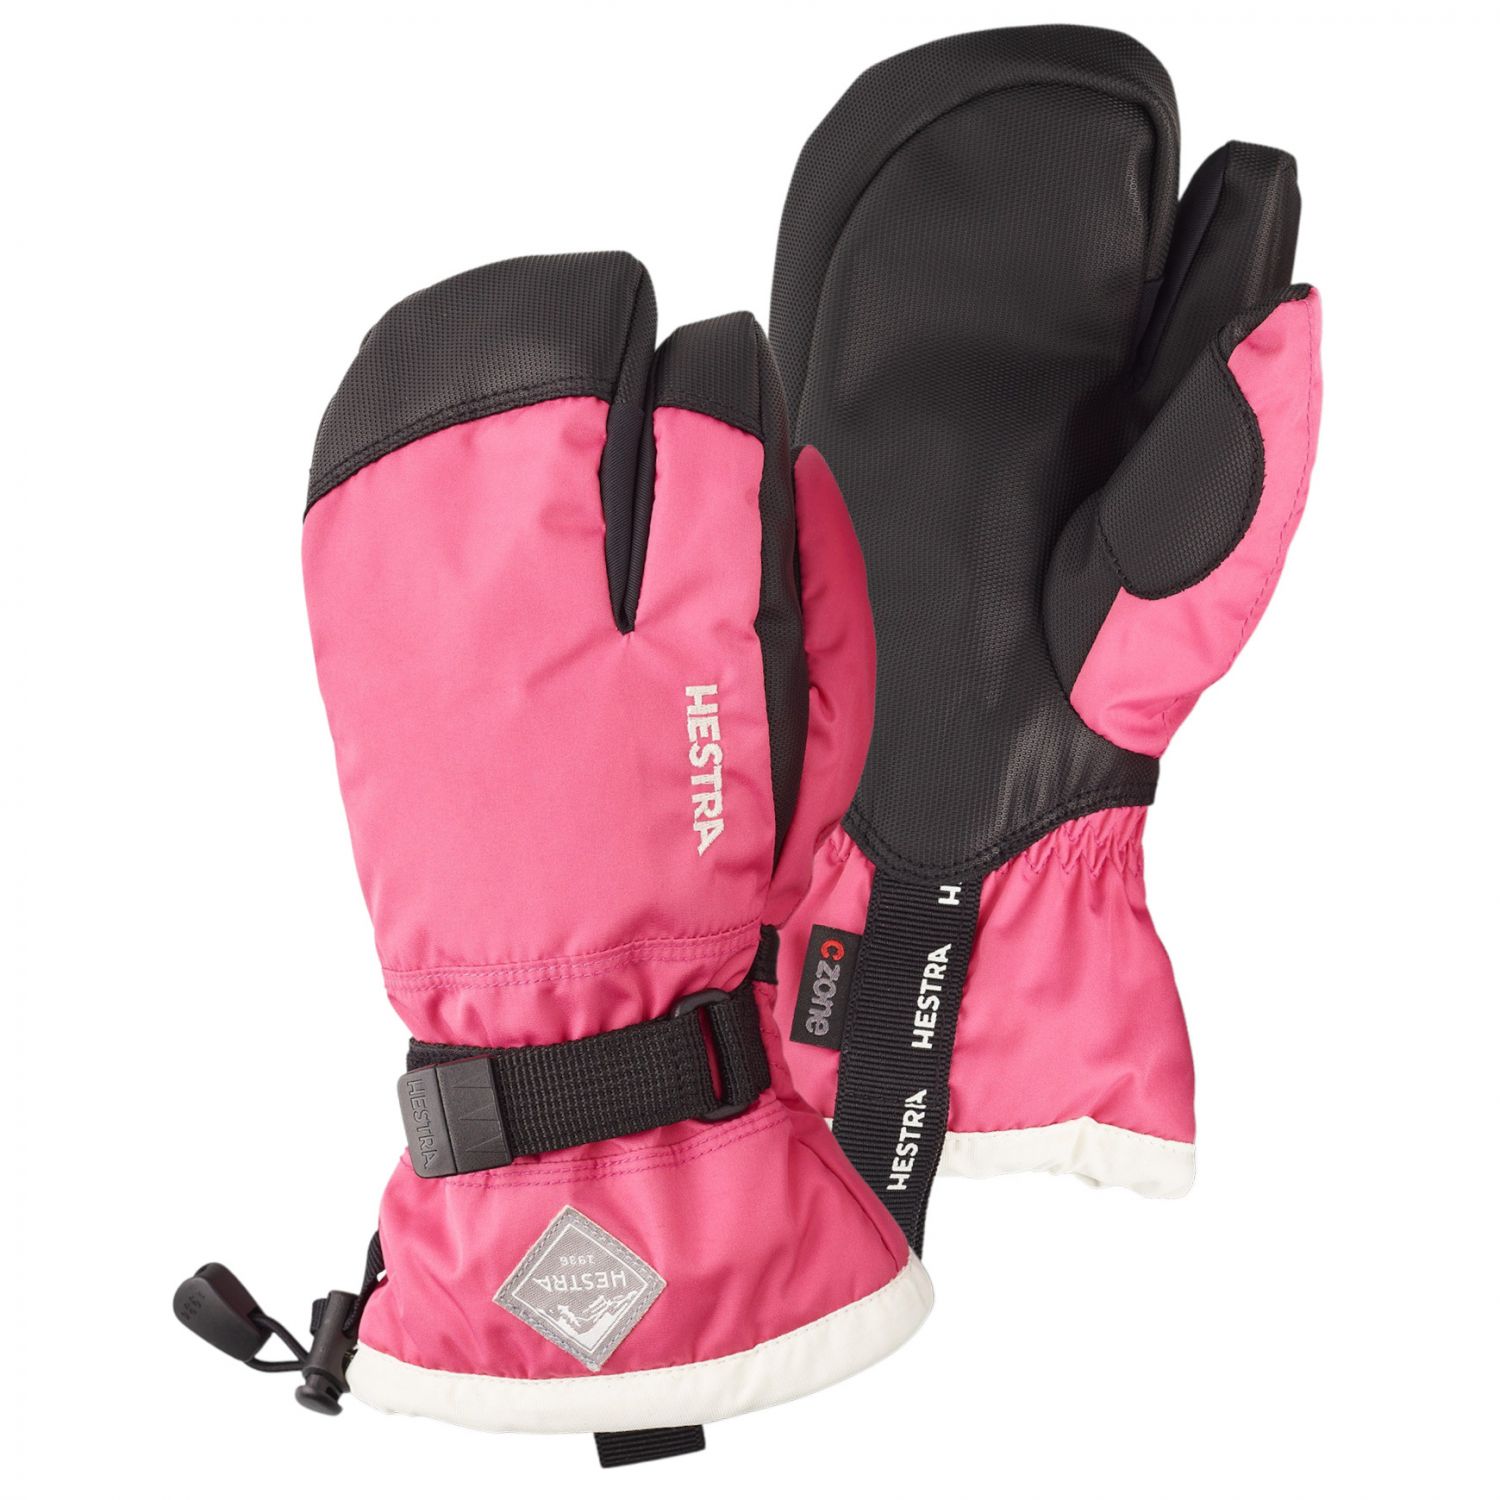 Billede af Hestra Gauntlet 3-finger skihandsker, junior, pink